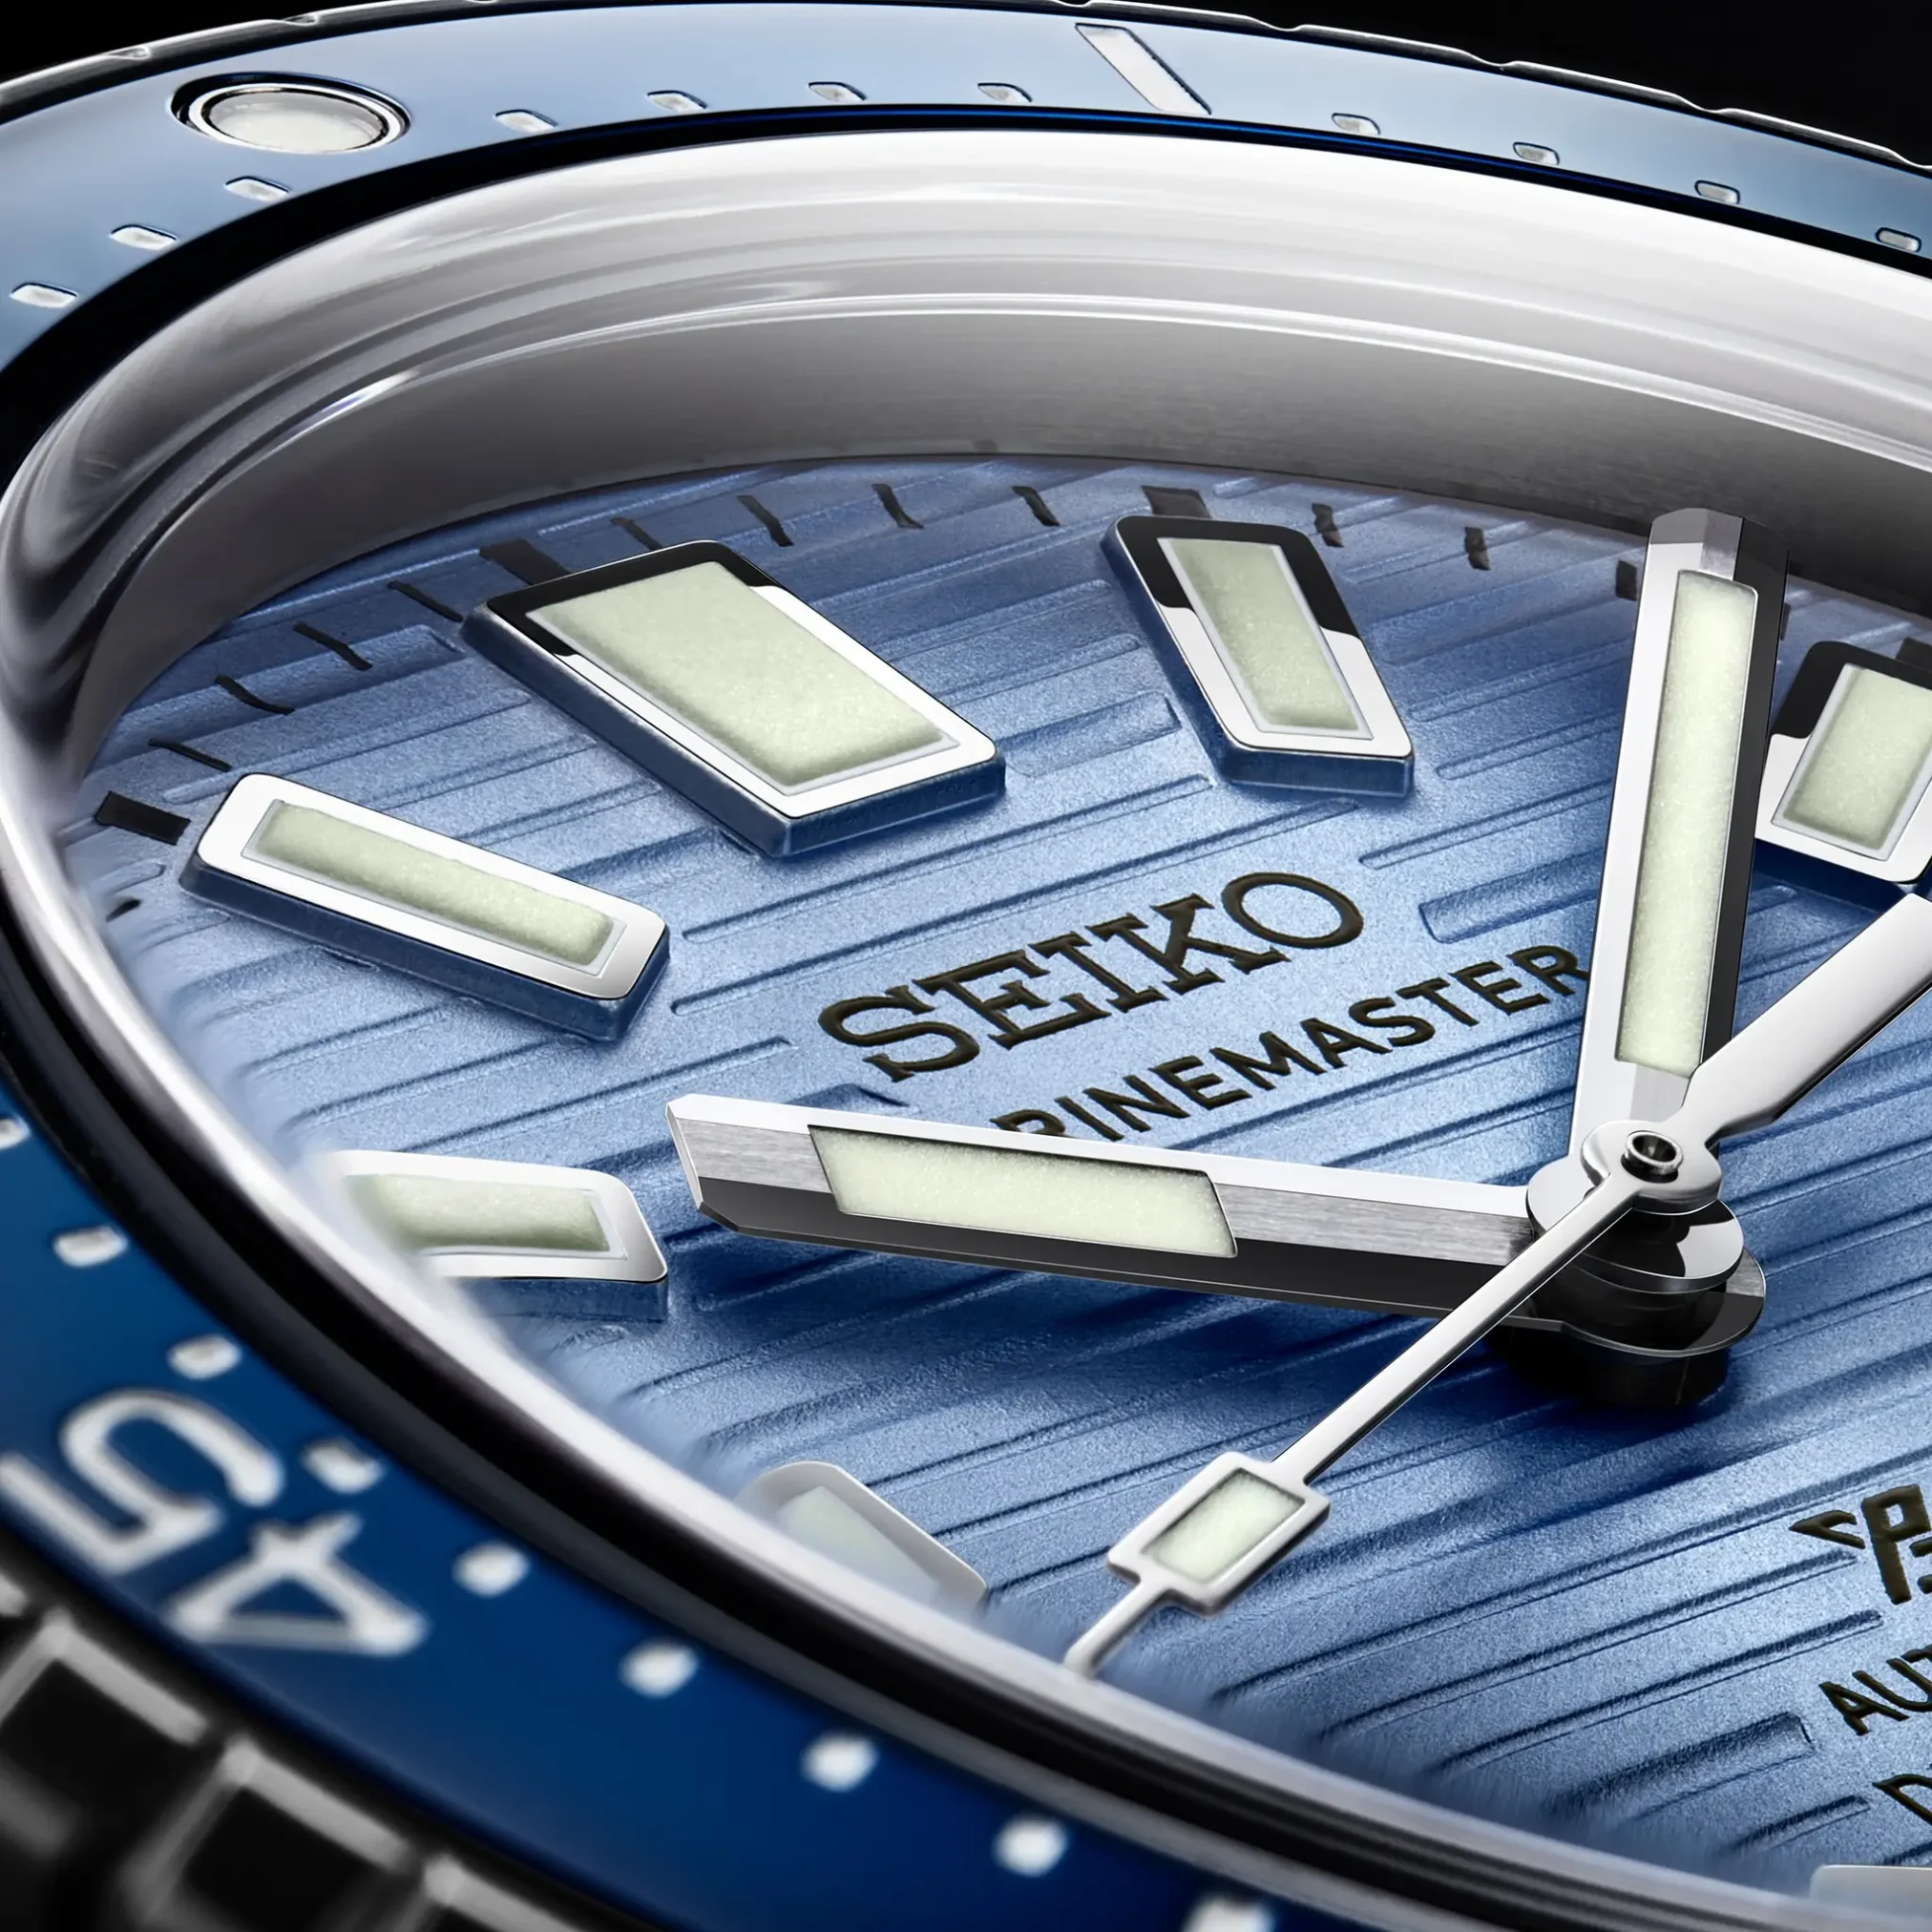 Đồng hồ Seiko Prospex Marinemaster Limited Edition SBEN007 (SJE099) mặt số màu xanh. Dây đeo bằng thép. Thân vỏ bằng thép.